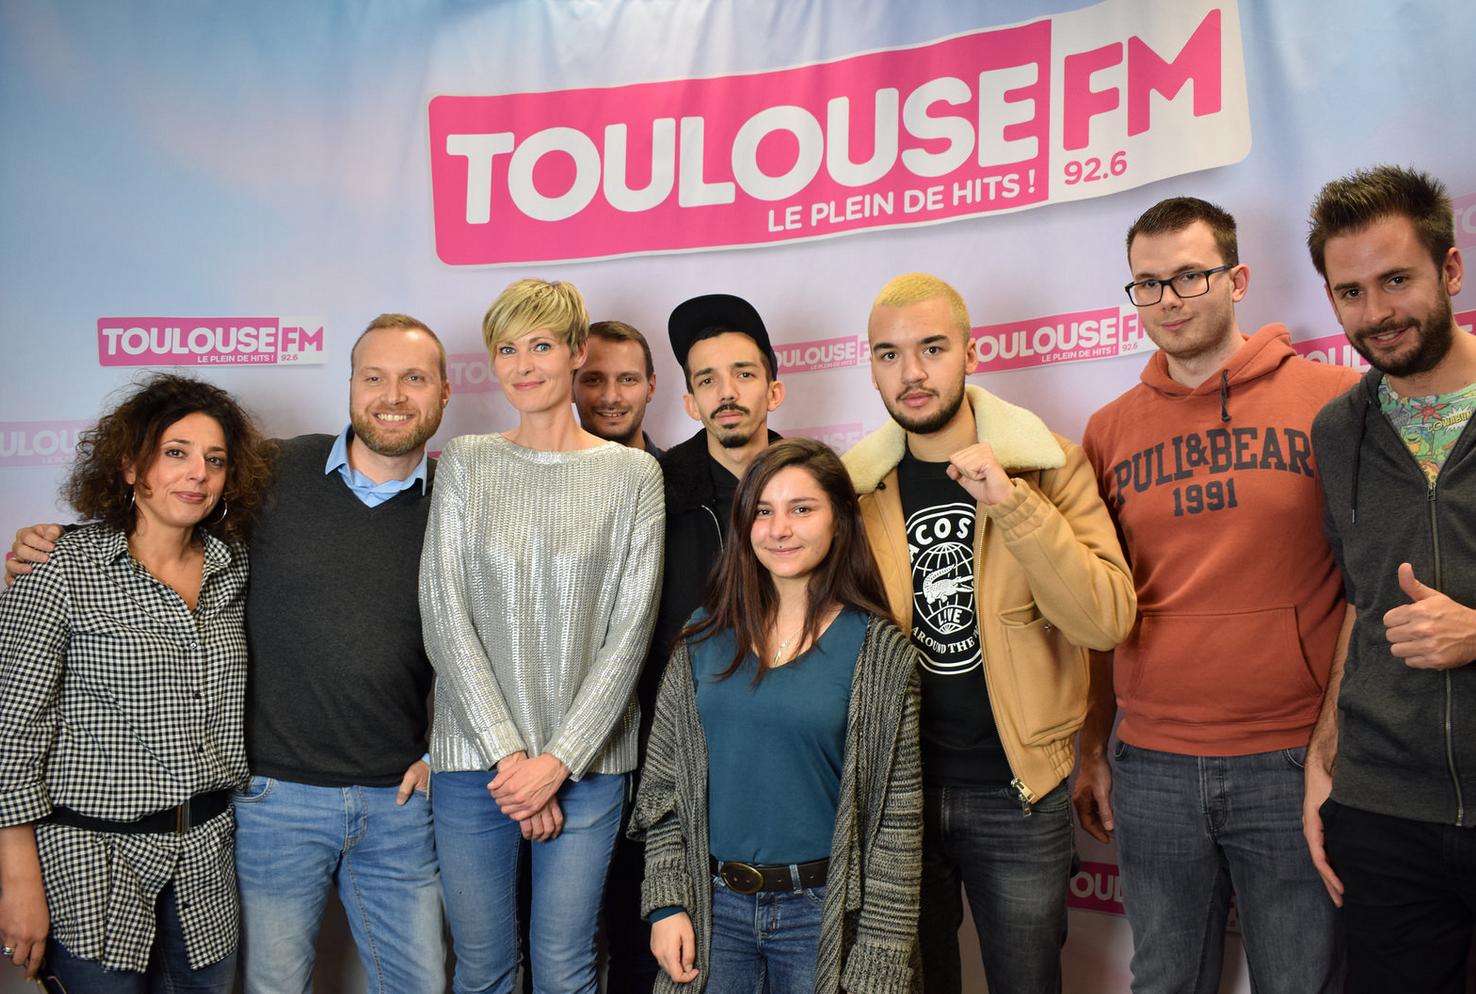 Des auditeurs de Toulouse ont pu également rencontrer le duo dans les studios de Toulouse FM